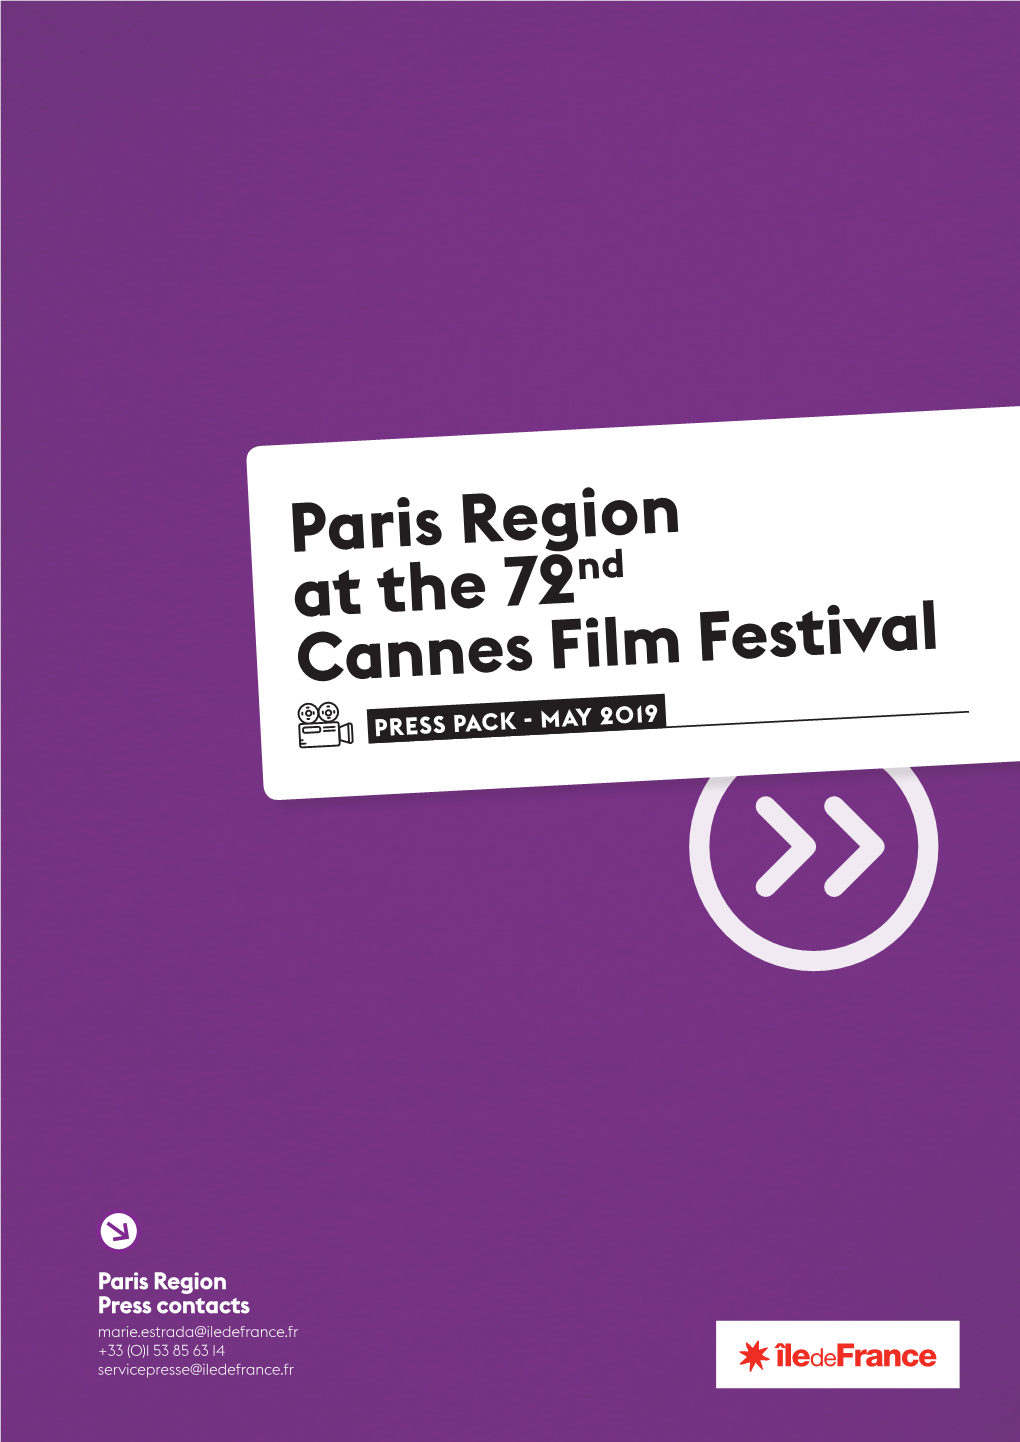 Paris Region at the 72 Cannes Film Festival